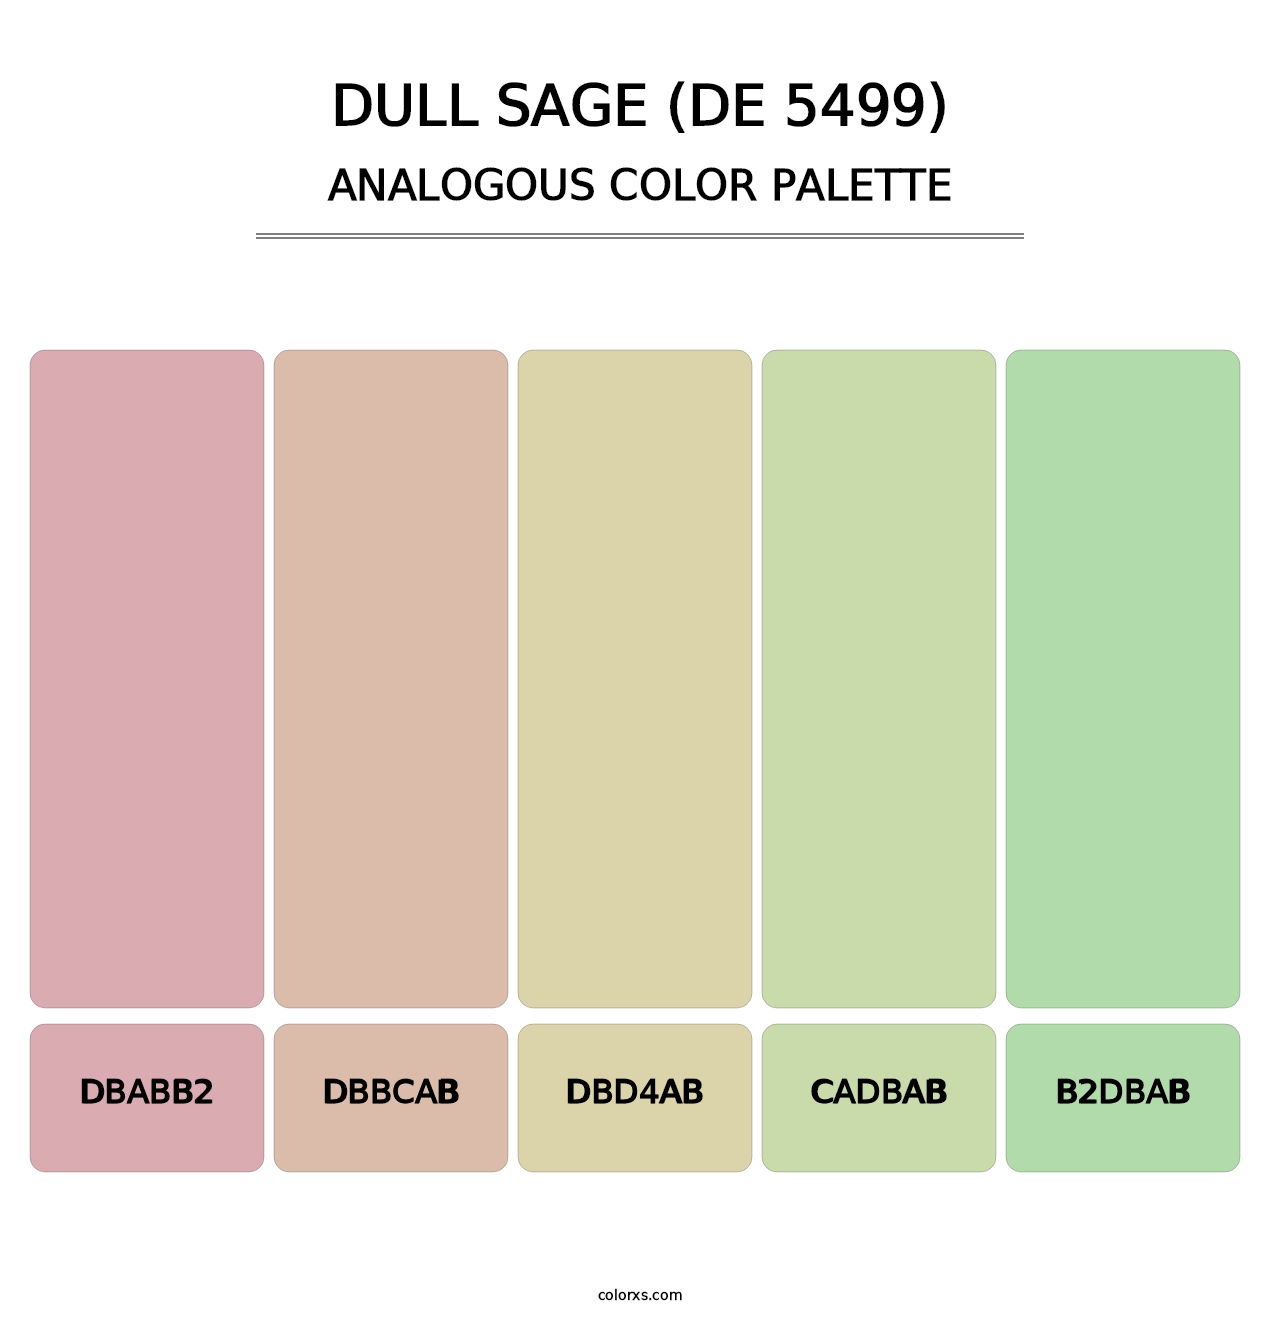 Dull Sage (DE 5499) - Analogous Color Palette